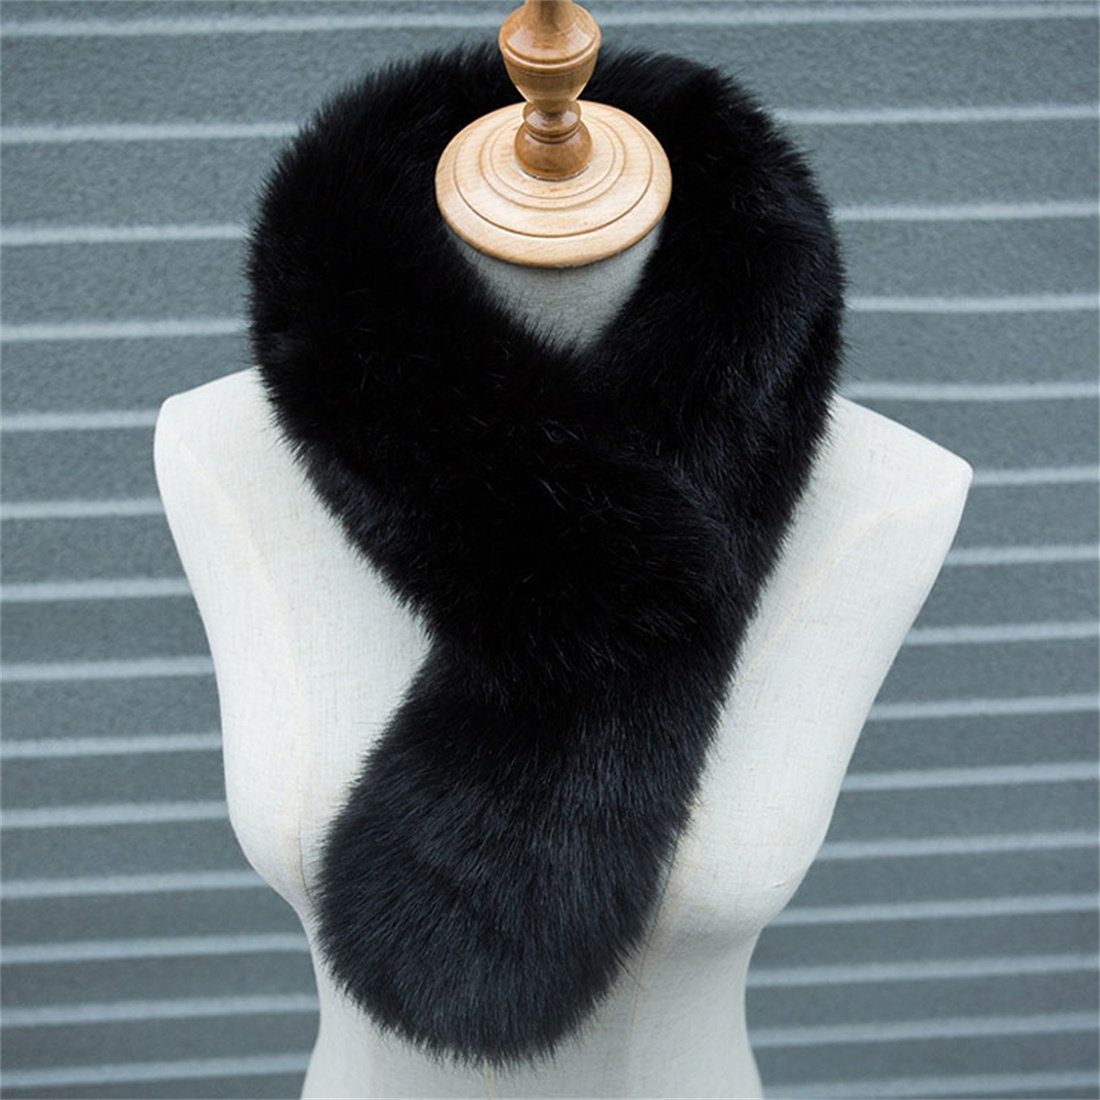 DÖRÖY Modeschal Damen Winter warm verdickt Plüsch Schal,Nachahmung Pelz einfarbigSchal Schwarz | Modeschals